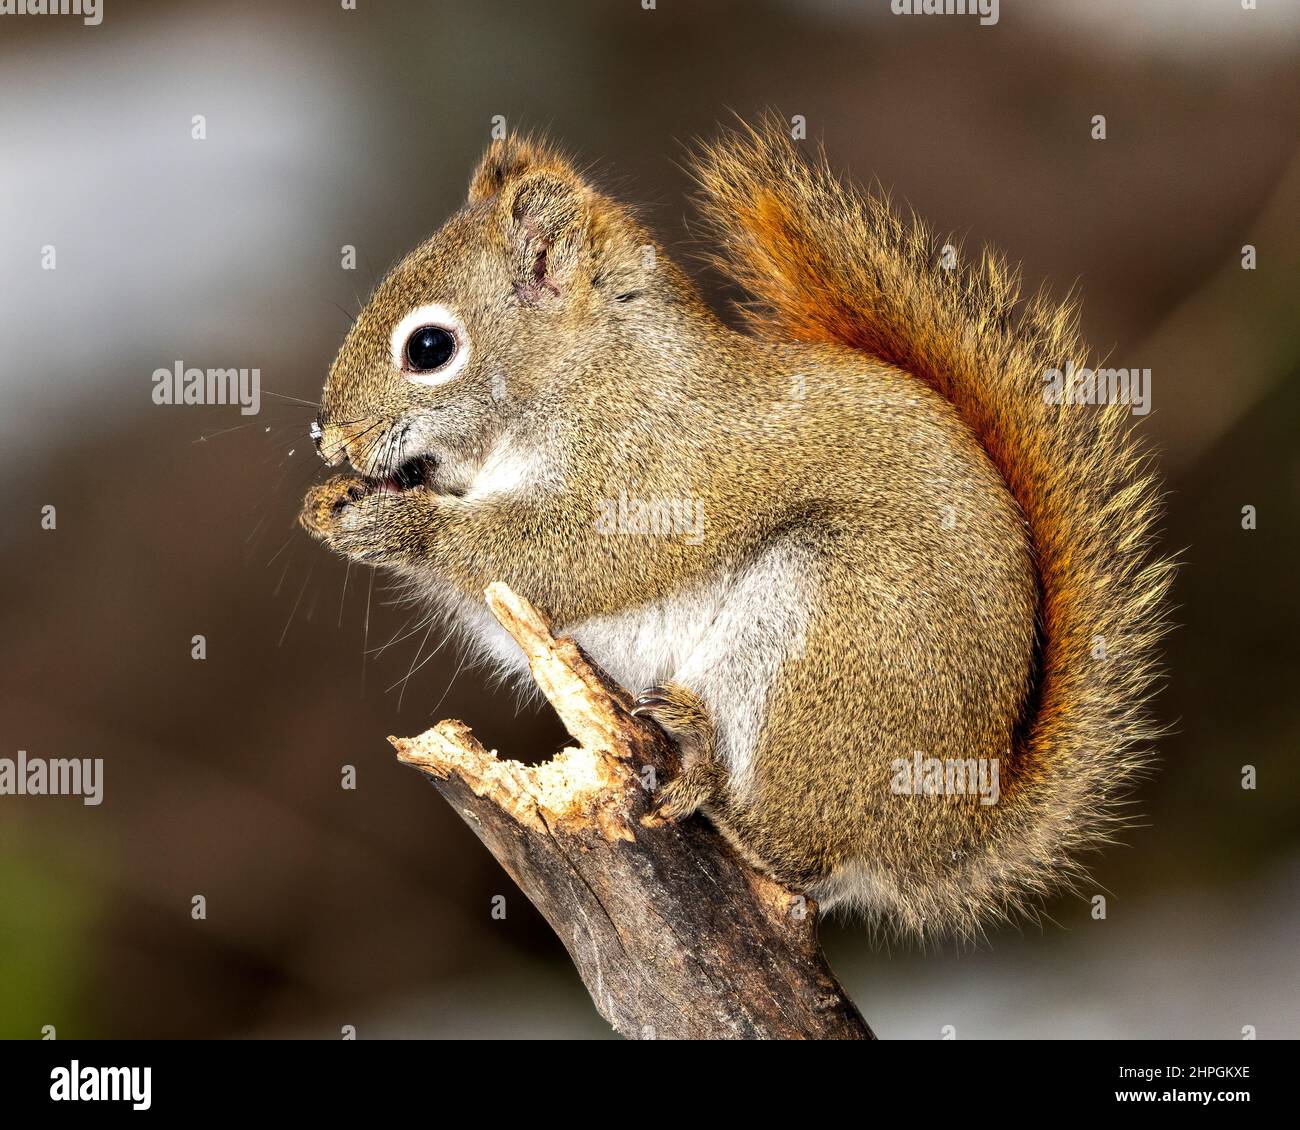 Eichhörnchen Nahaufnahme Profil Seitenansicht im Wald stehend auf einem Ast Baum mit einem verschwommenen Hintergrund mit seinem braunen Fell, Pfoten, buschigen Schwanz. Stockfoto